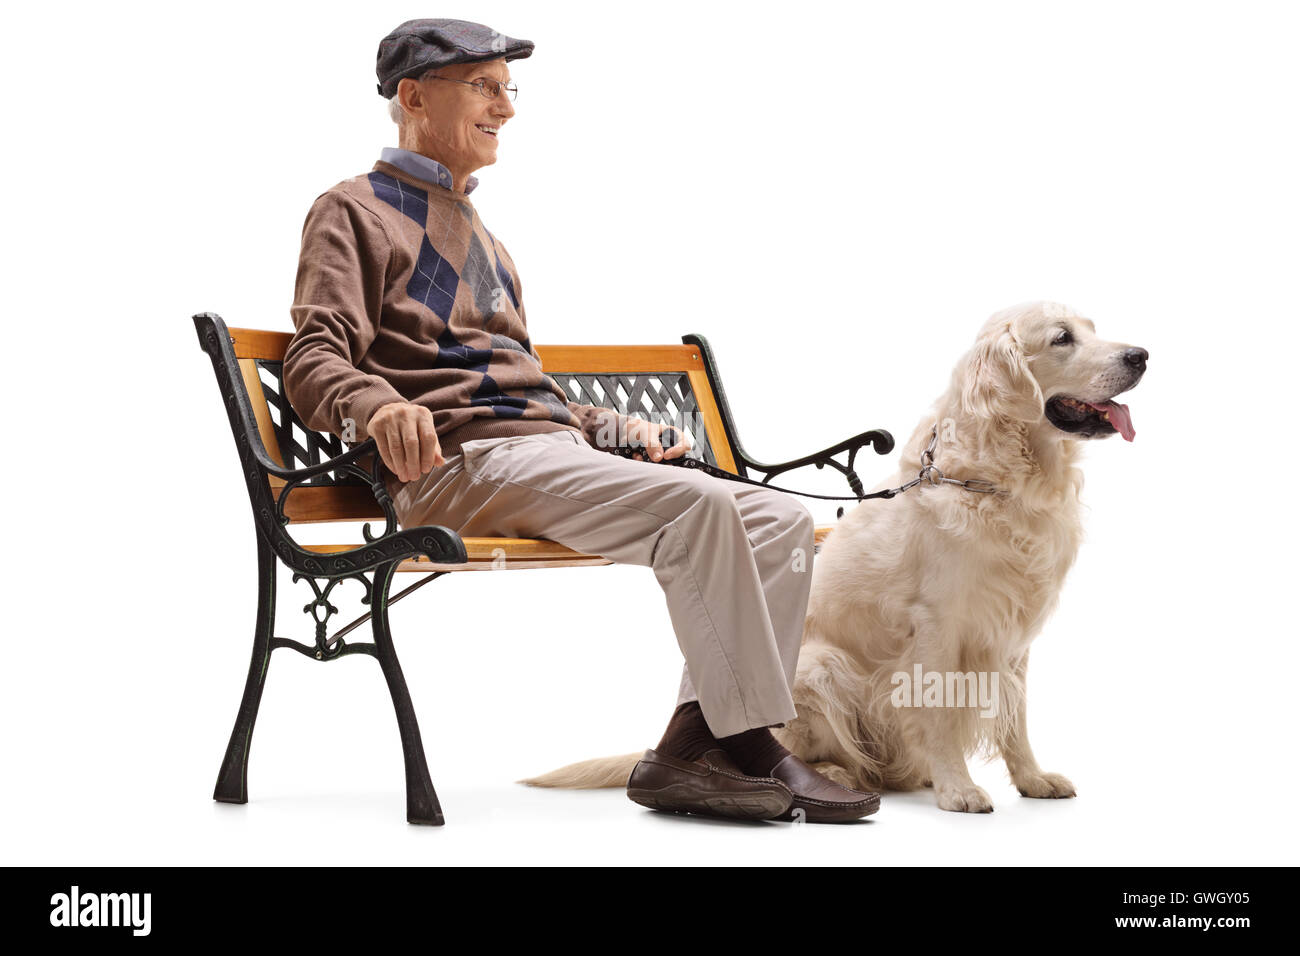 Hauts homme assis sur un banc avec son chien isolé sur fond blanc Banque D'Images